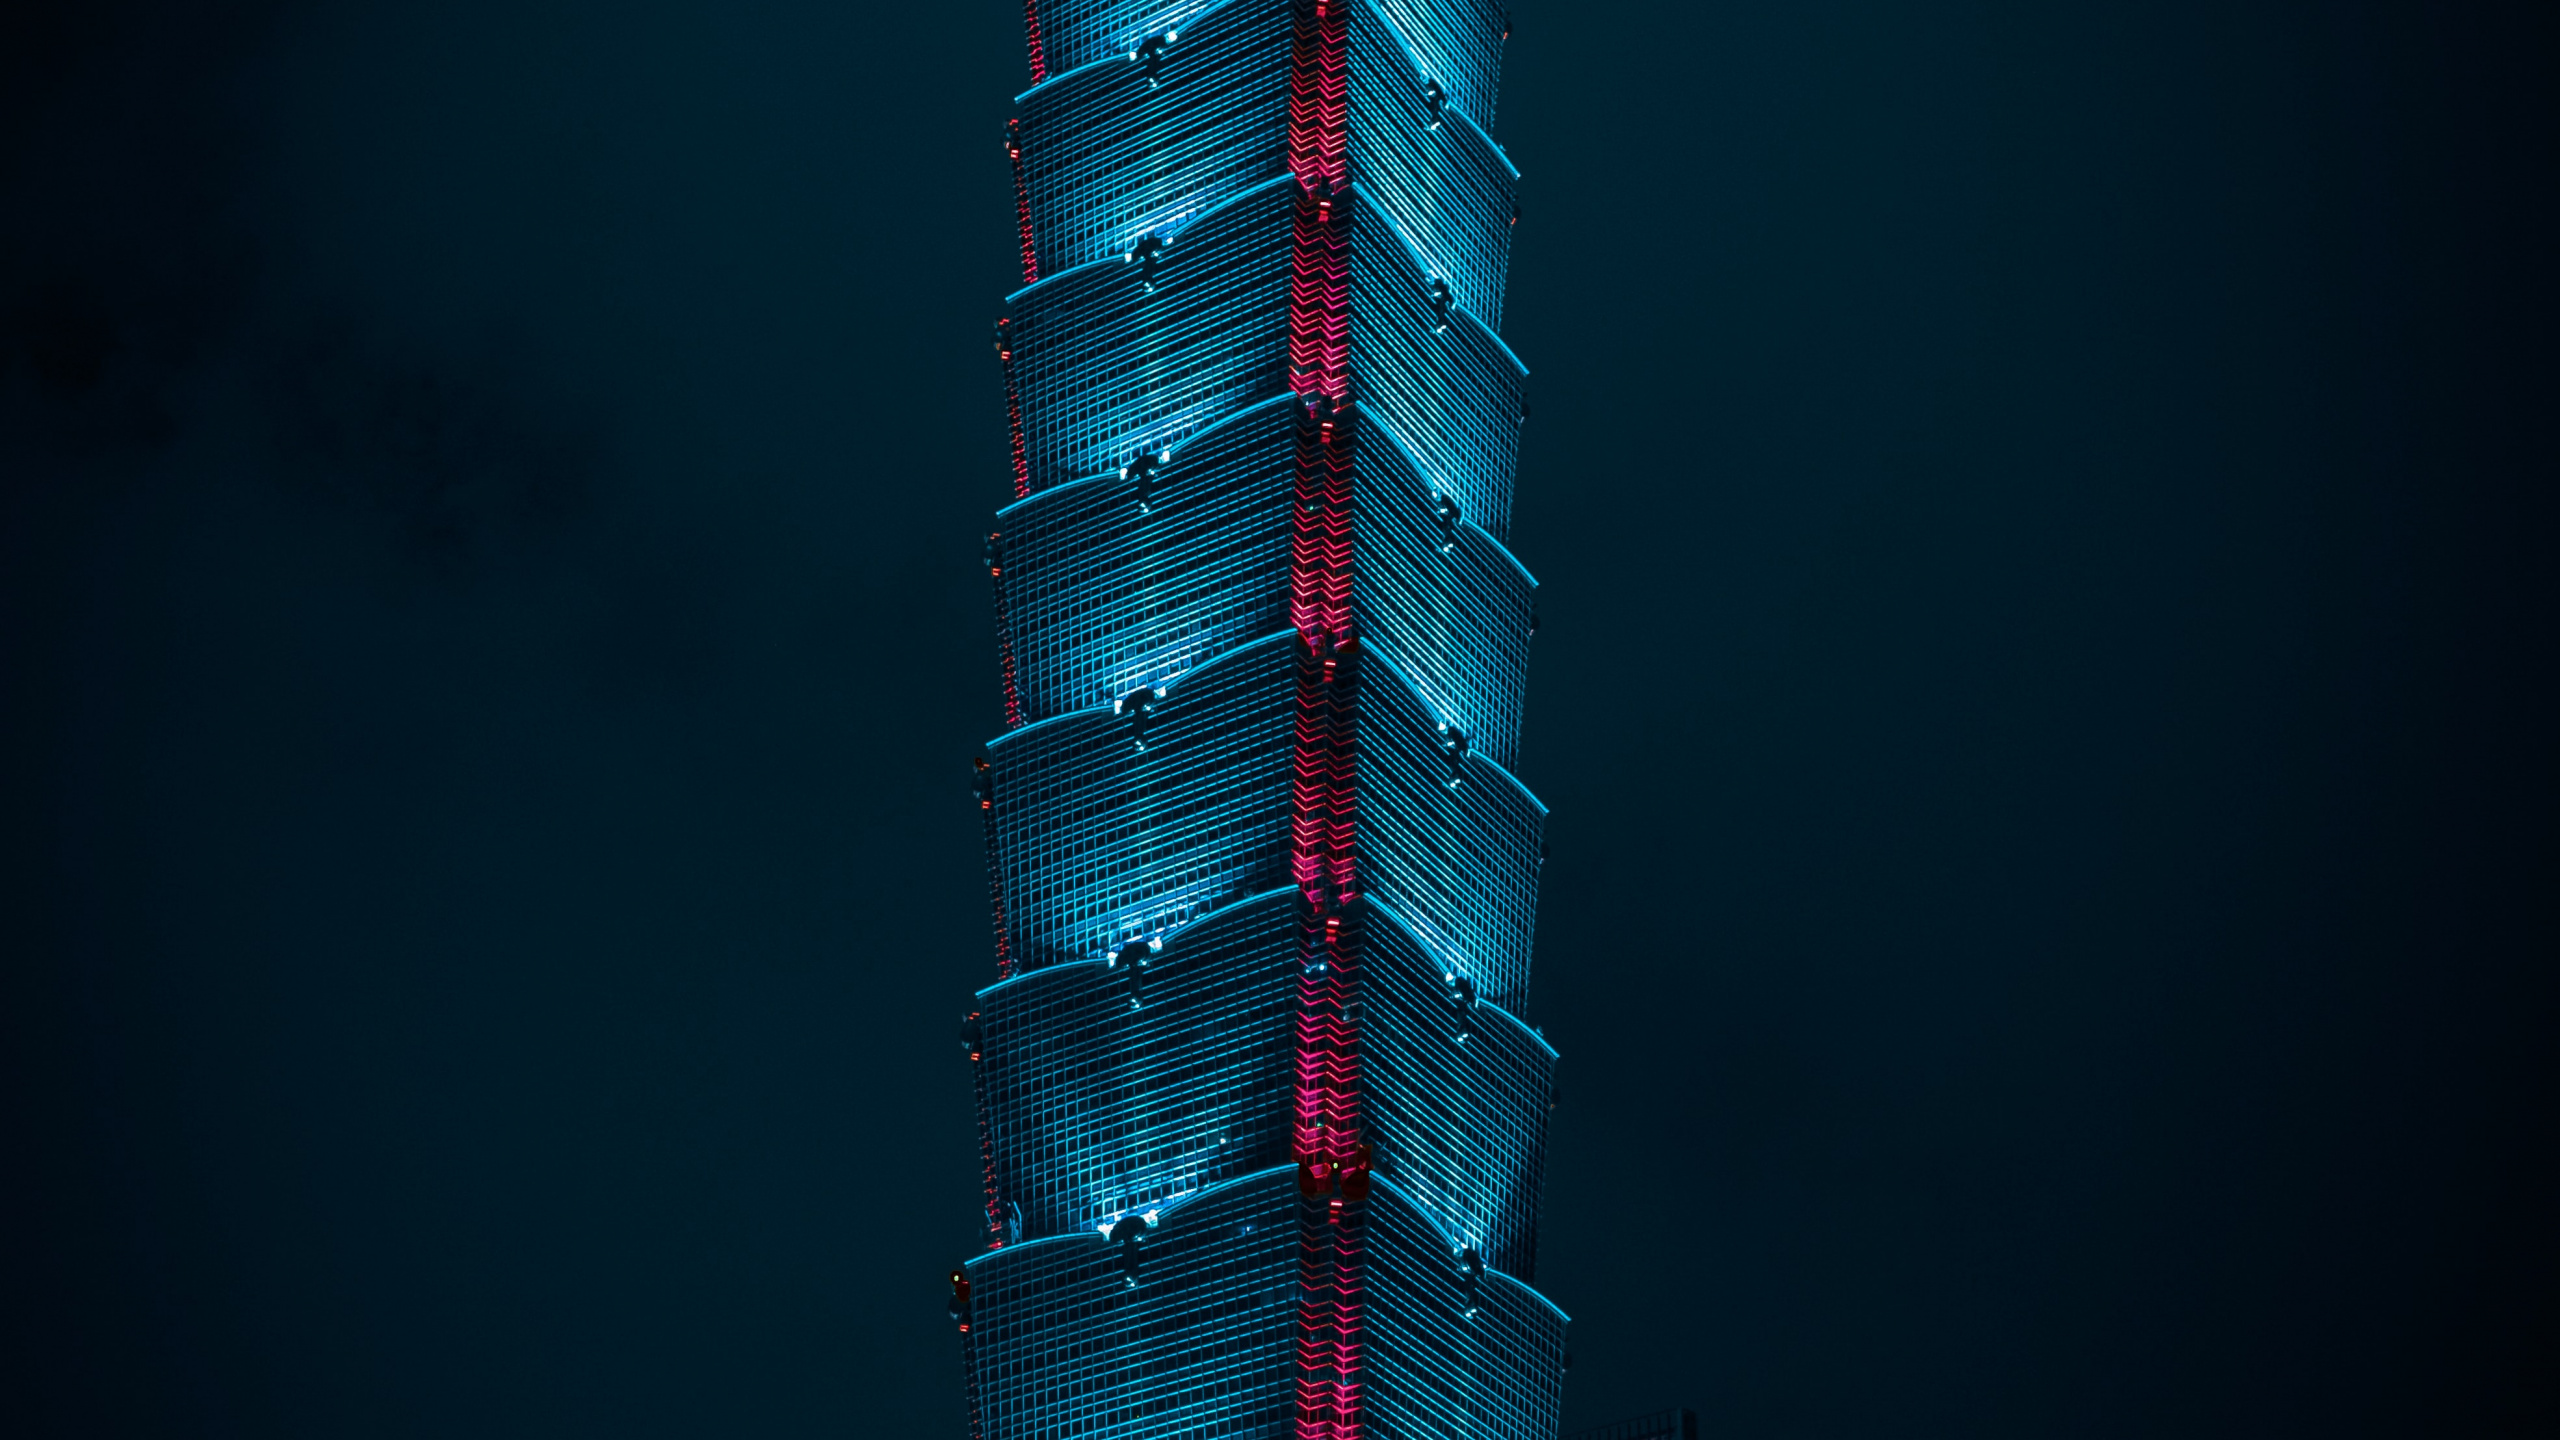 Observatorium Taipei 101, Wolkenkratzer, Gebäude, Tower, Taipei 101. Wallpaper in 2560x1440 Resolution